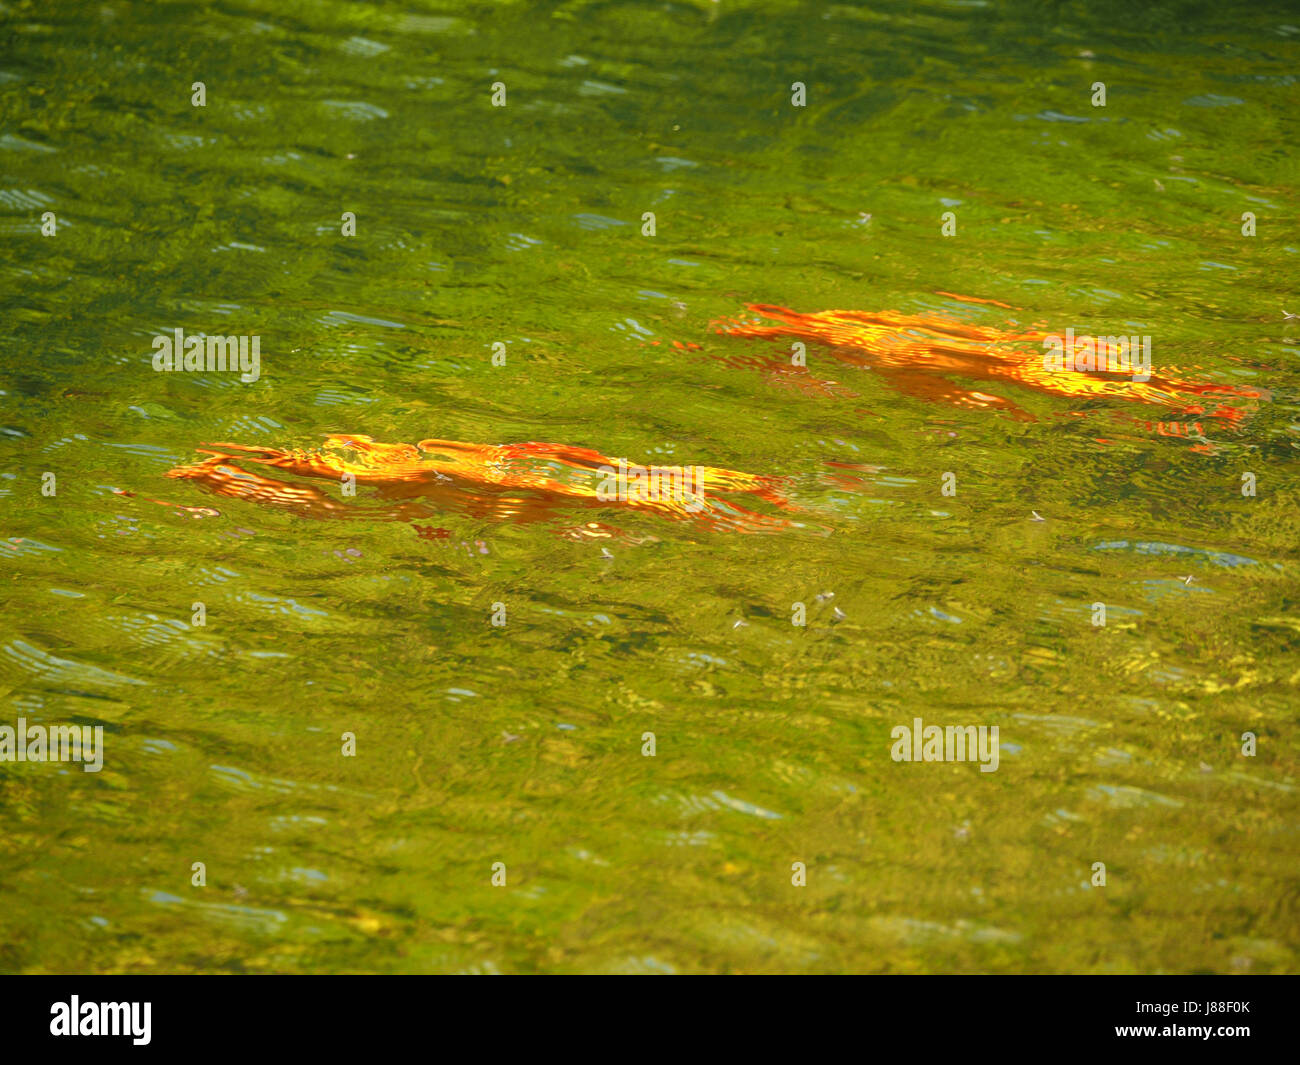 Koi Carp goldfish (Cyprinus carpio) swimming in pond in Yorkshire, England UK Stock Photo